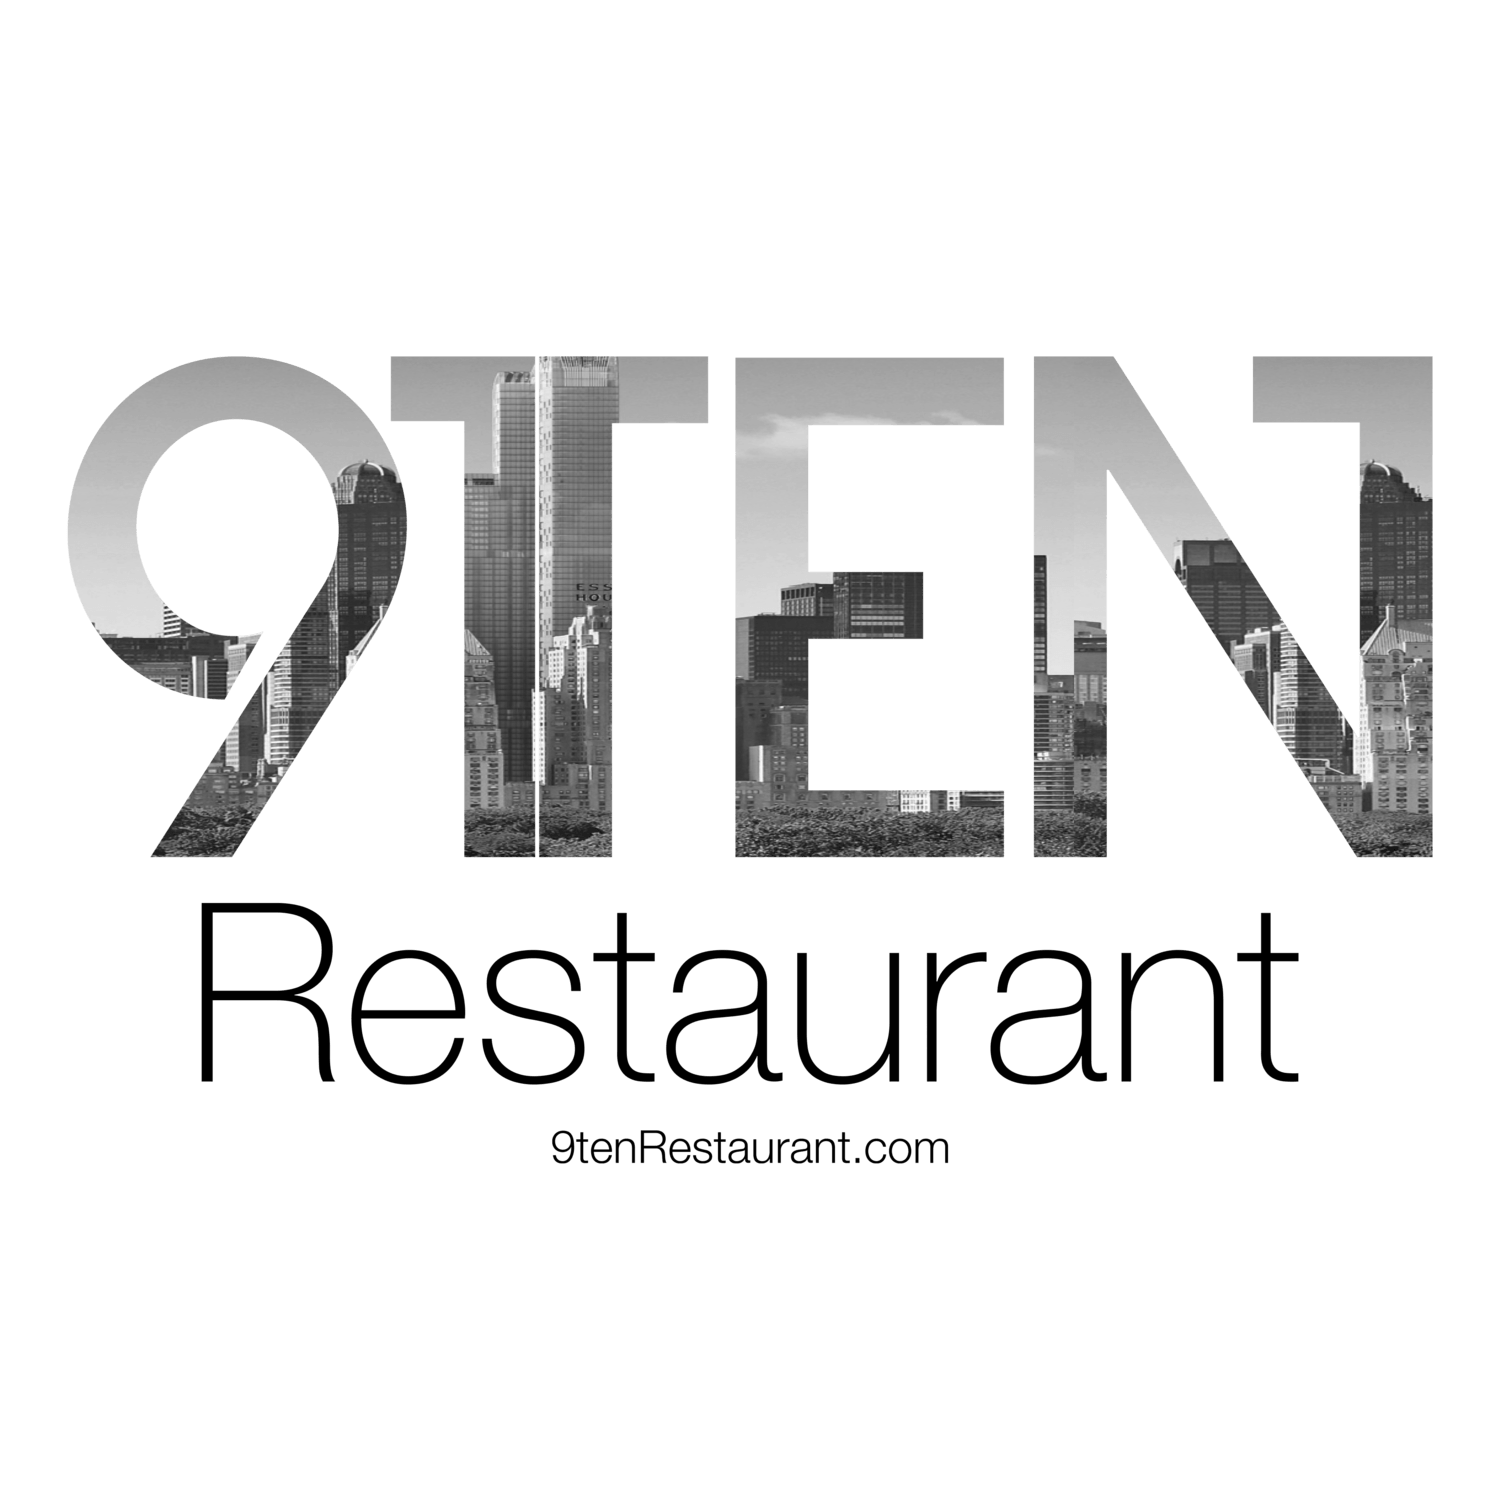 Black and White Restaurant Rectangle Logo - 9Ten Restaurant